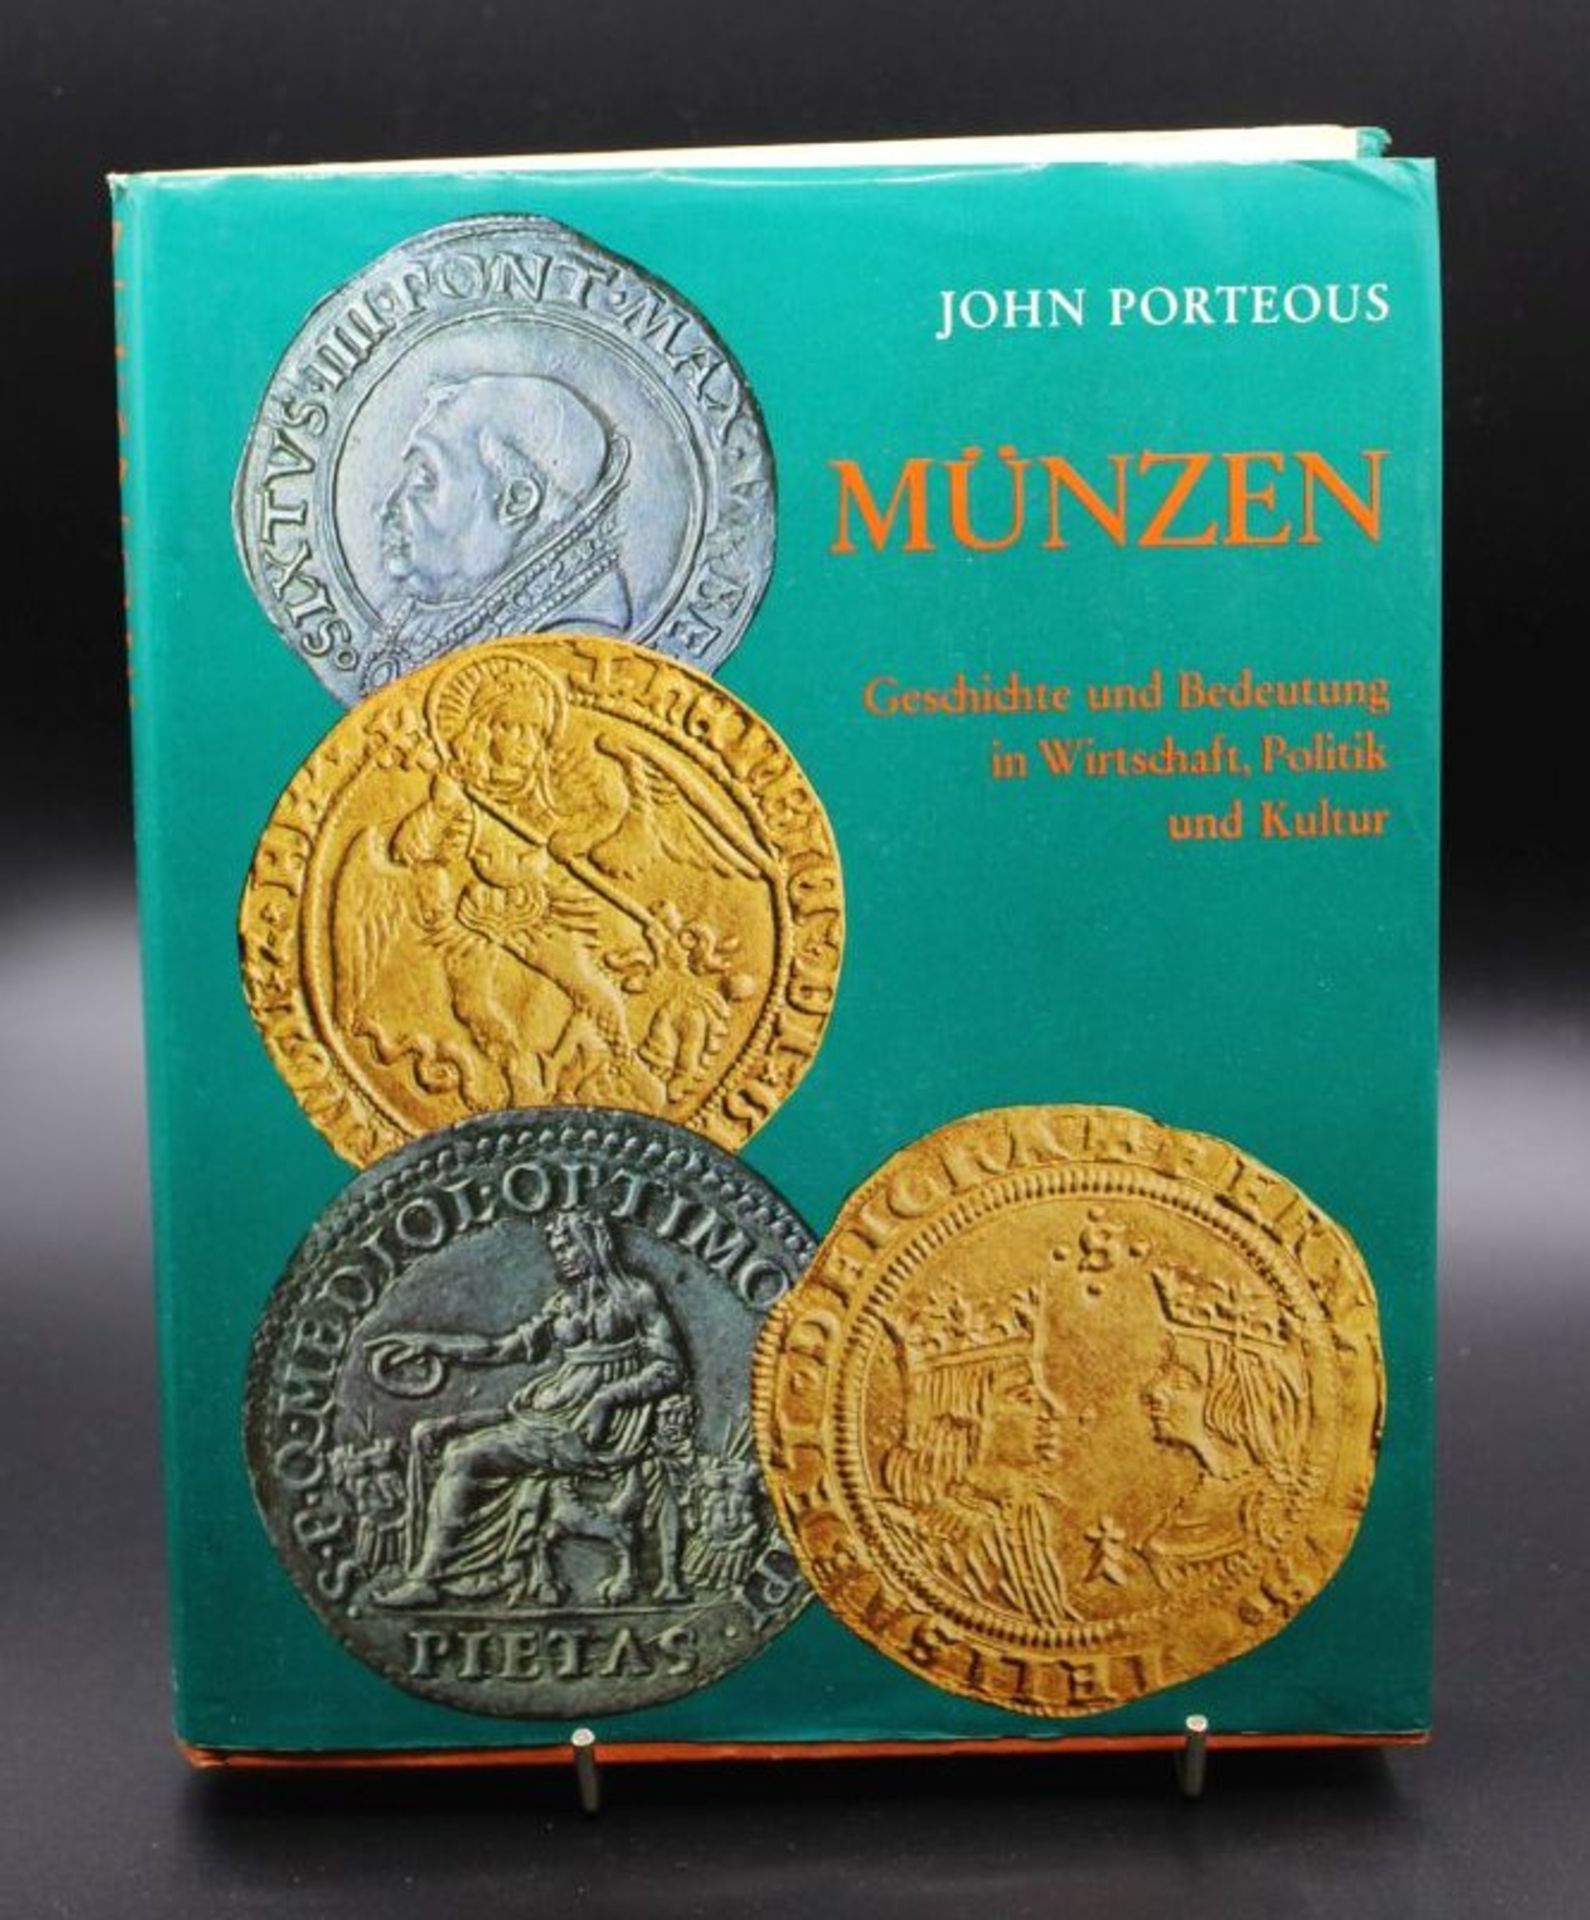 Münzen- Geschichte und Bedeutung in Wirtschaft, Politik und Kultur, John Porteous, 1969.